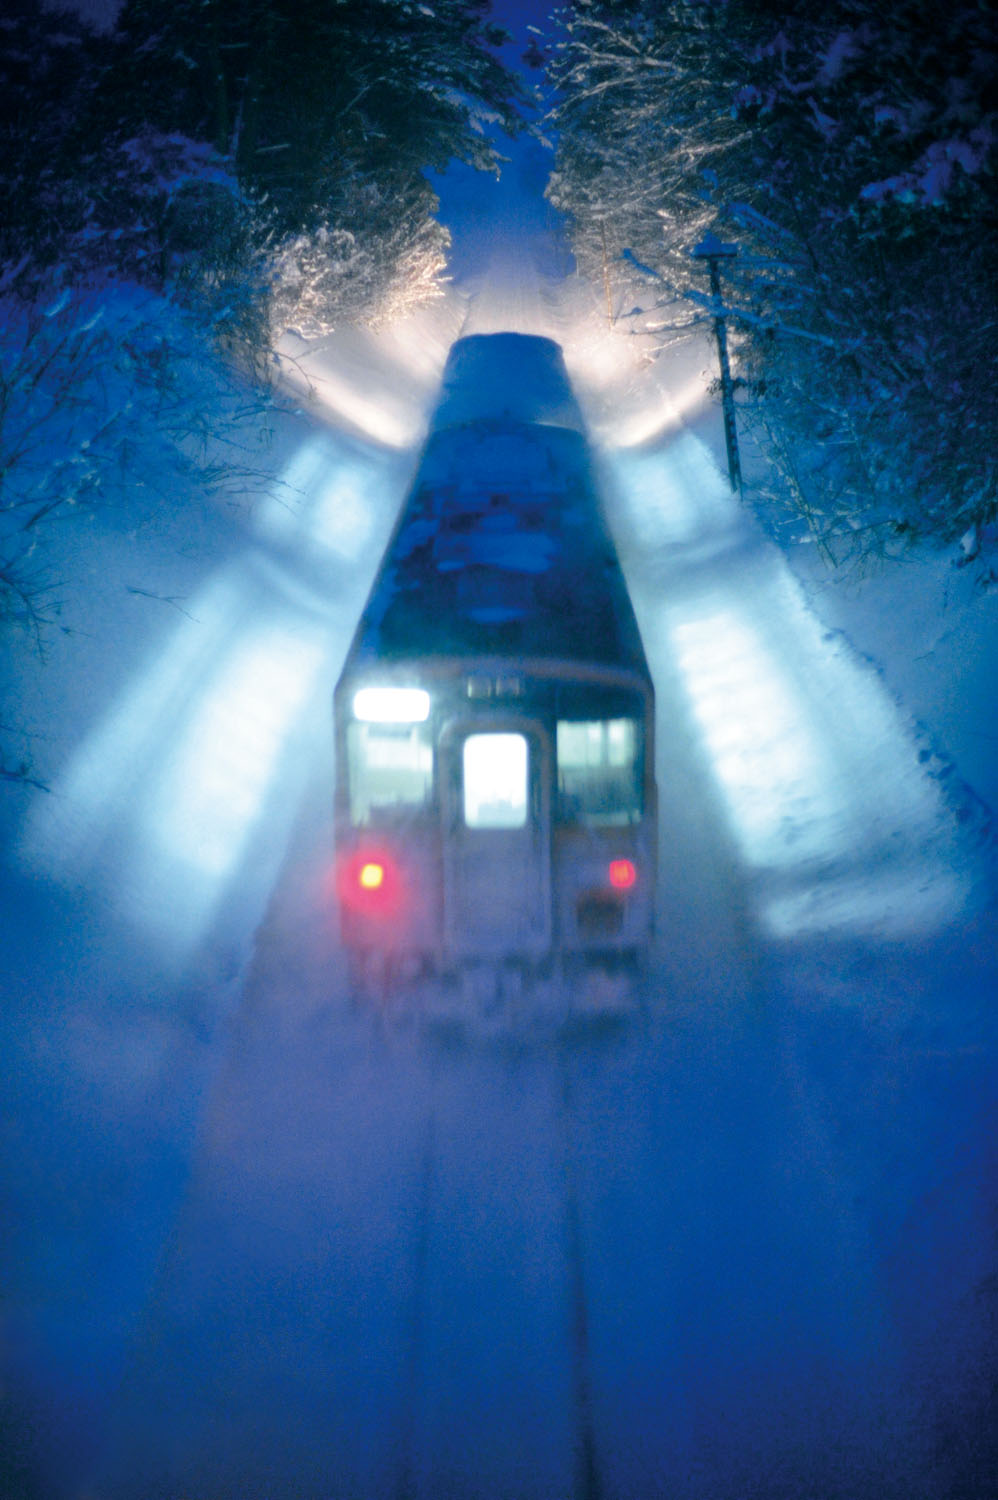 夜鉄テクニック解説編 雪に映る明かりを幻想的に撮る 銀河鉄道の夜 夜鉄 第5回 Pictures